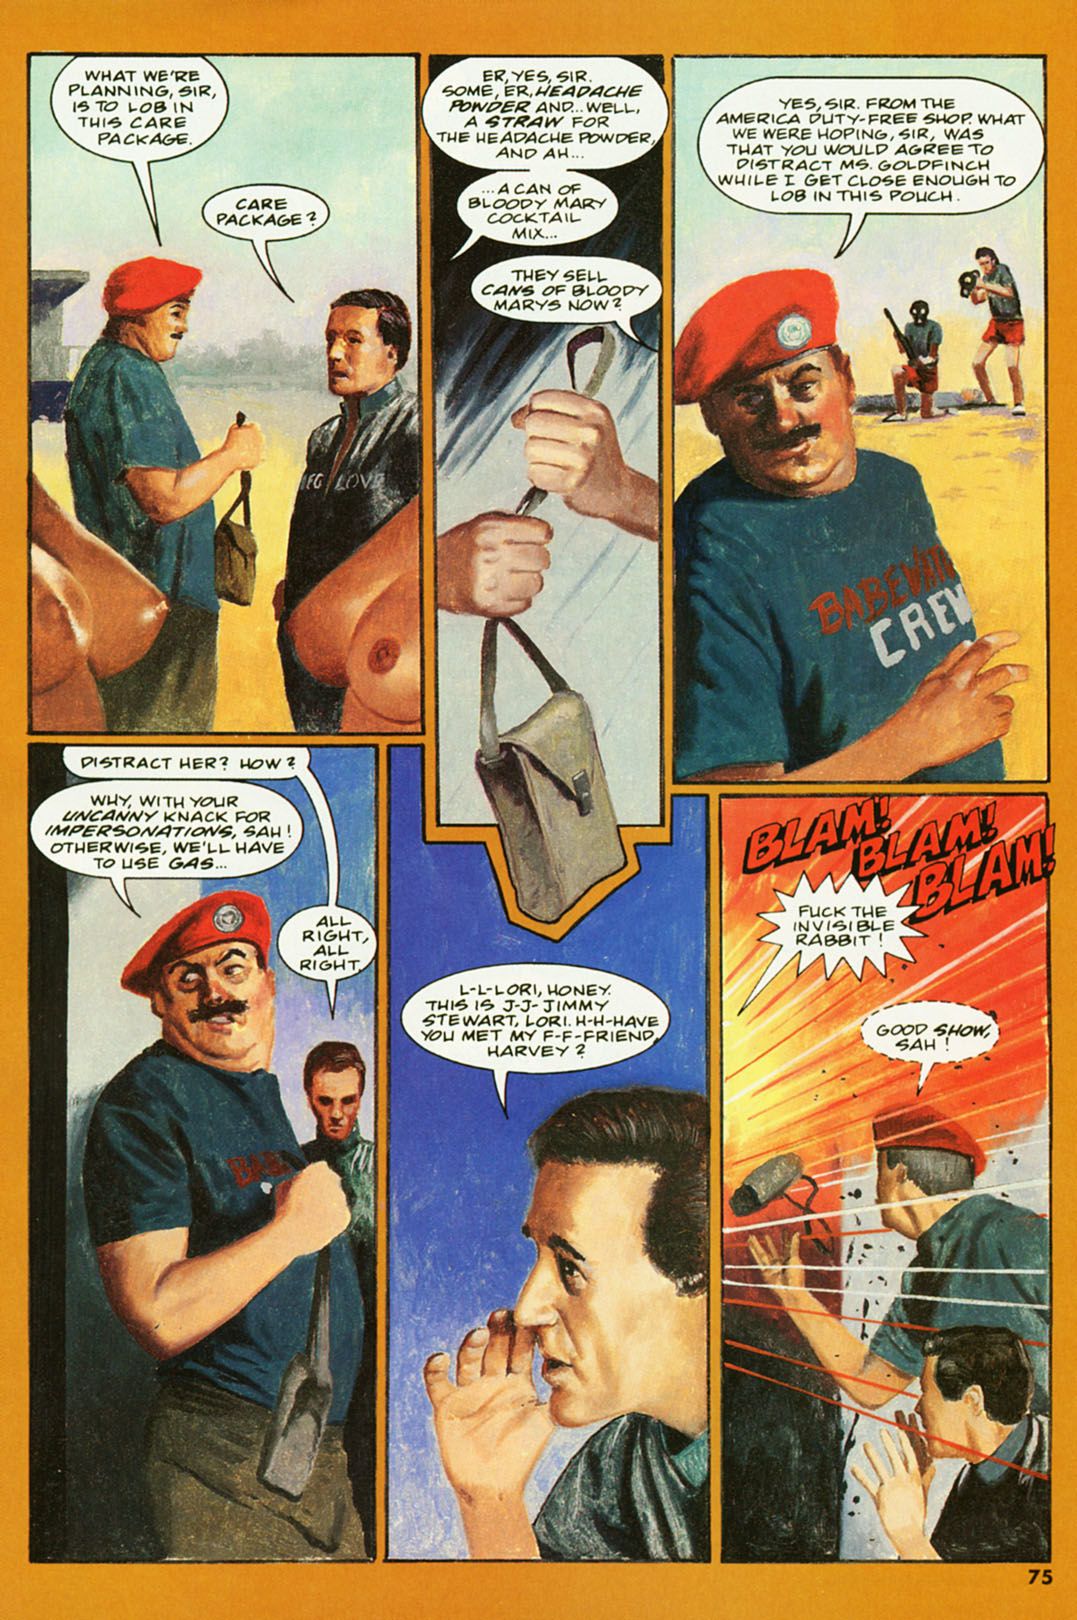 пентхаус мужские приключения комикс #2 часть 4